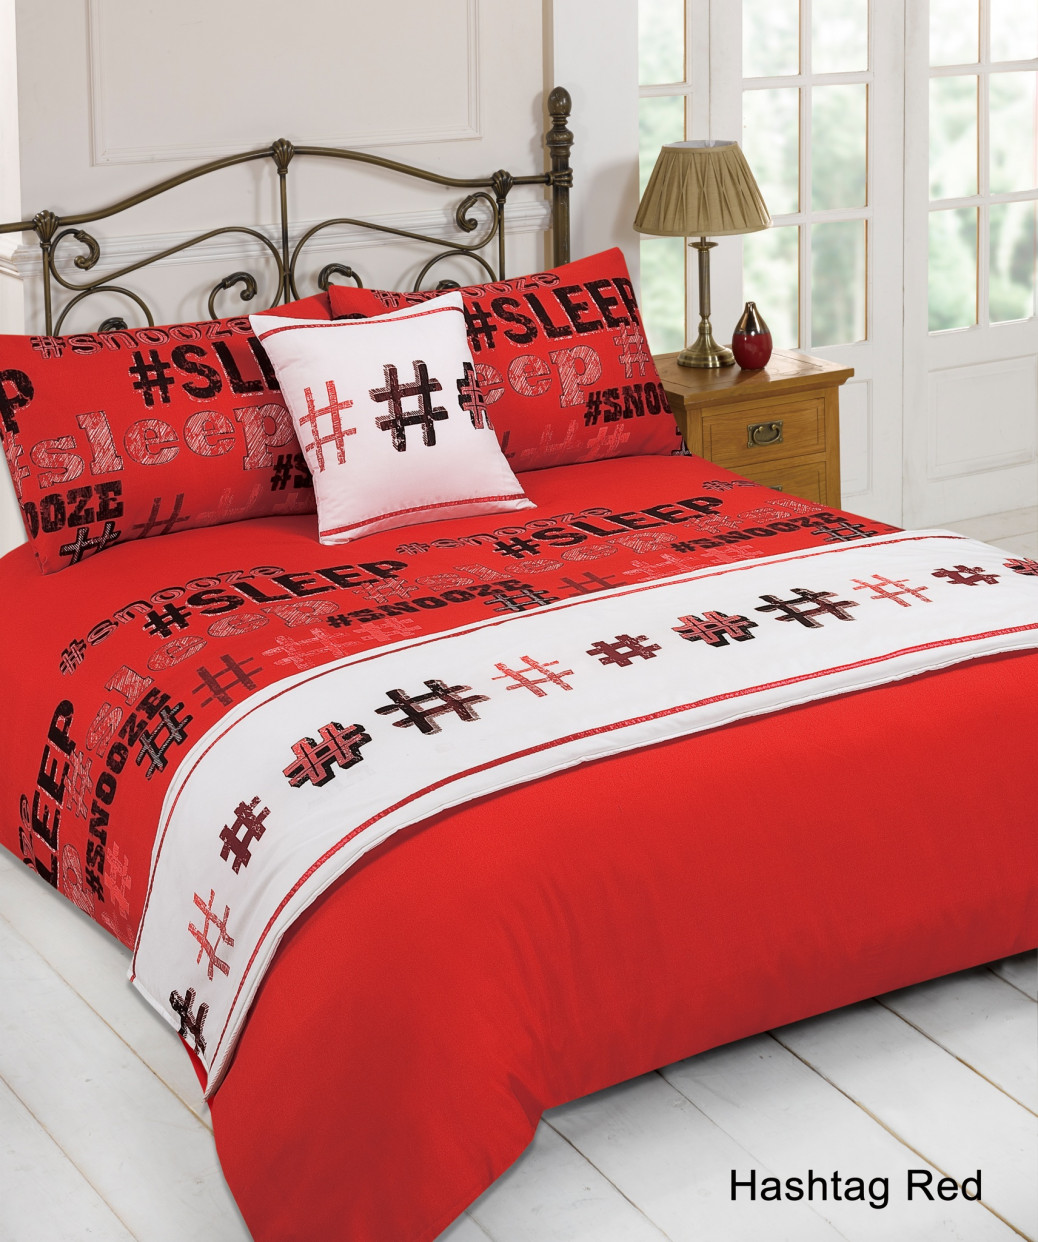 Dreamscene Hashtag Bed in a Bag Bedding Set, Red - Super King>